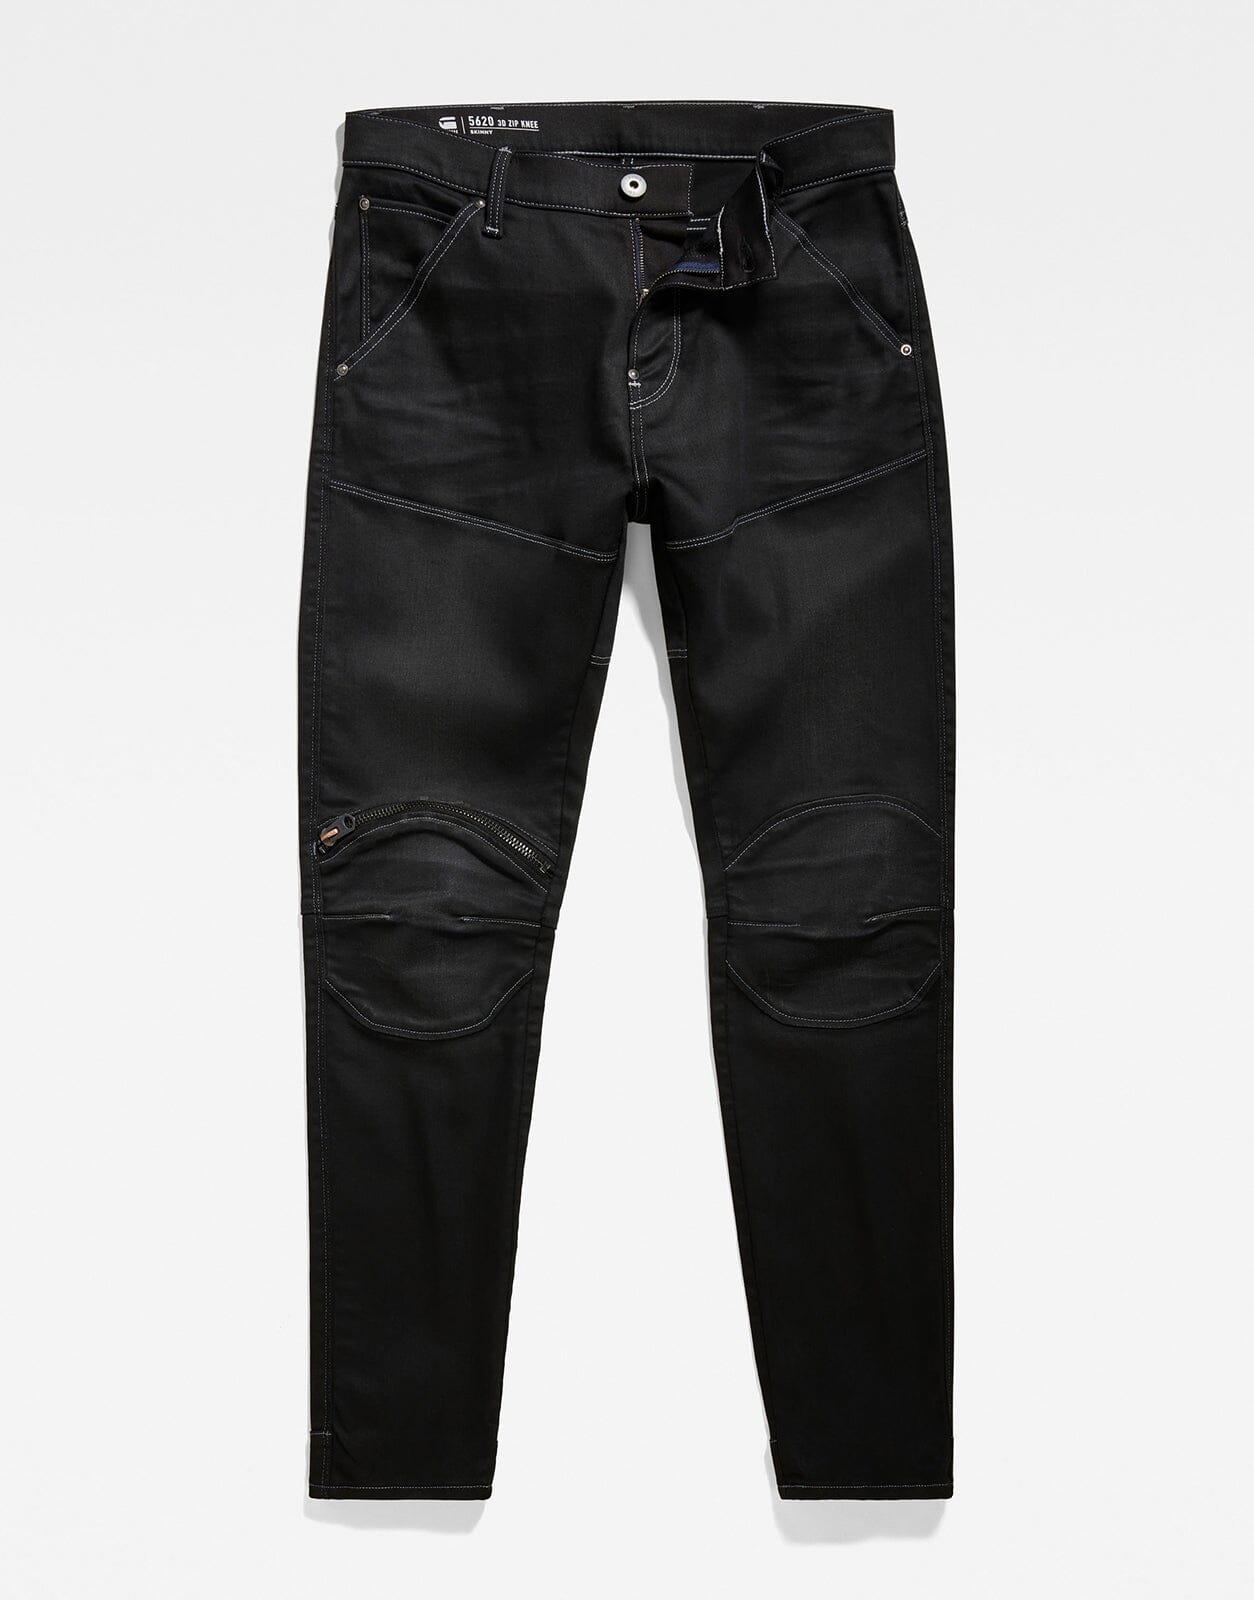 G-Star RAW 5620 3D Zip Knee Skinny Black Jeans - Subwear